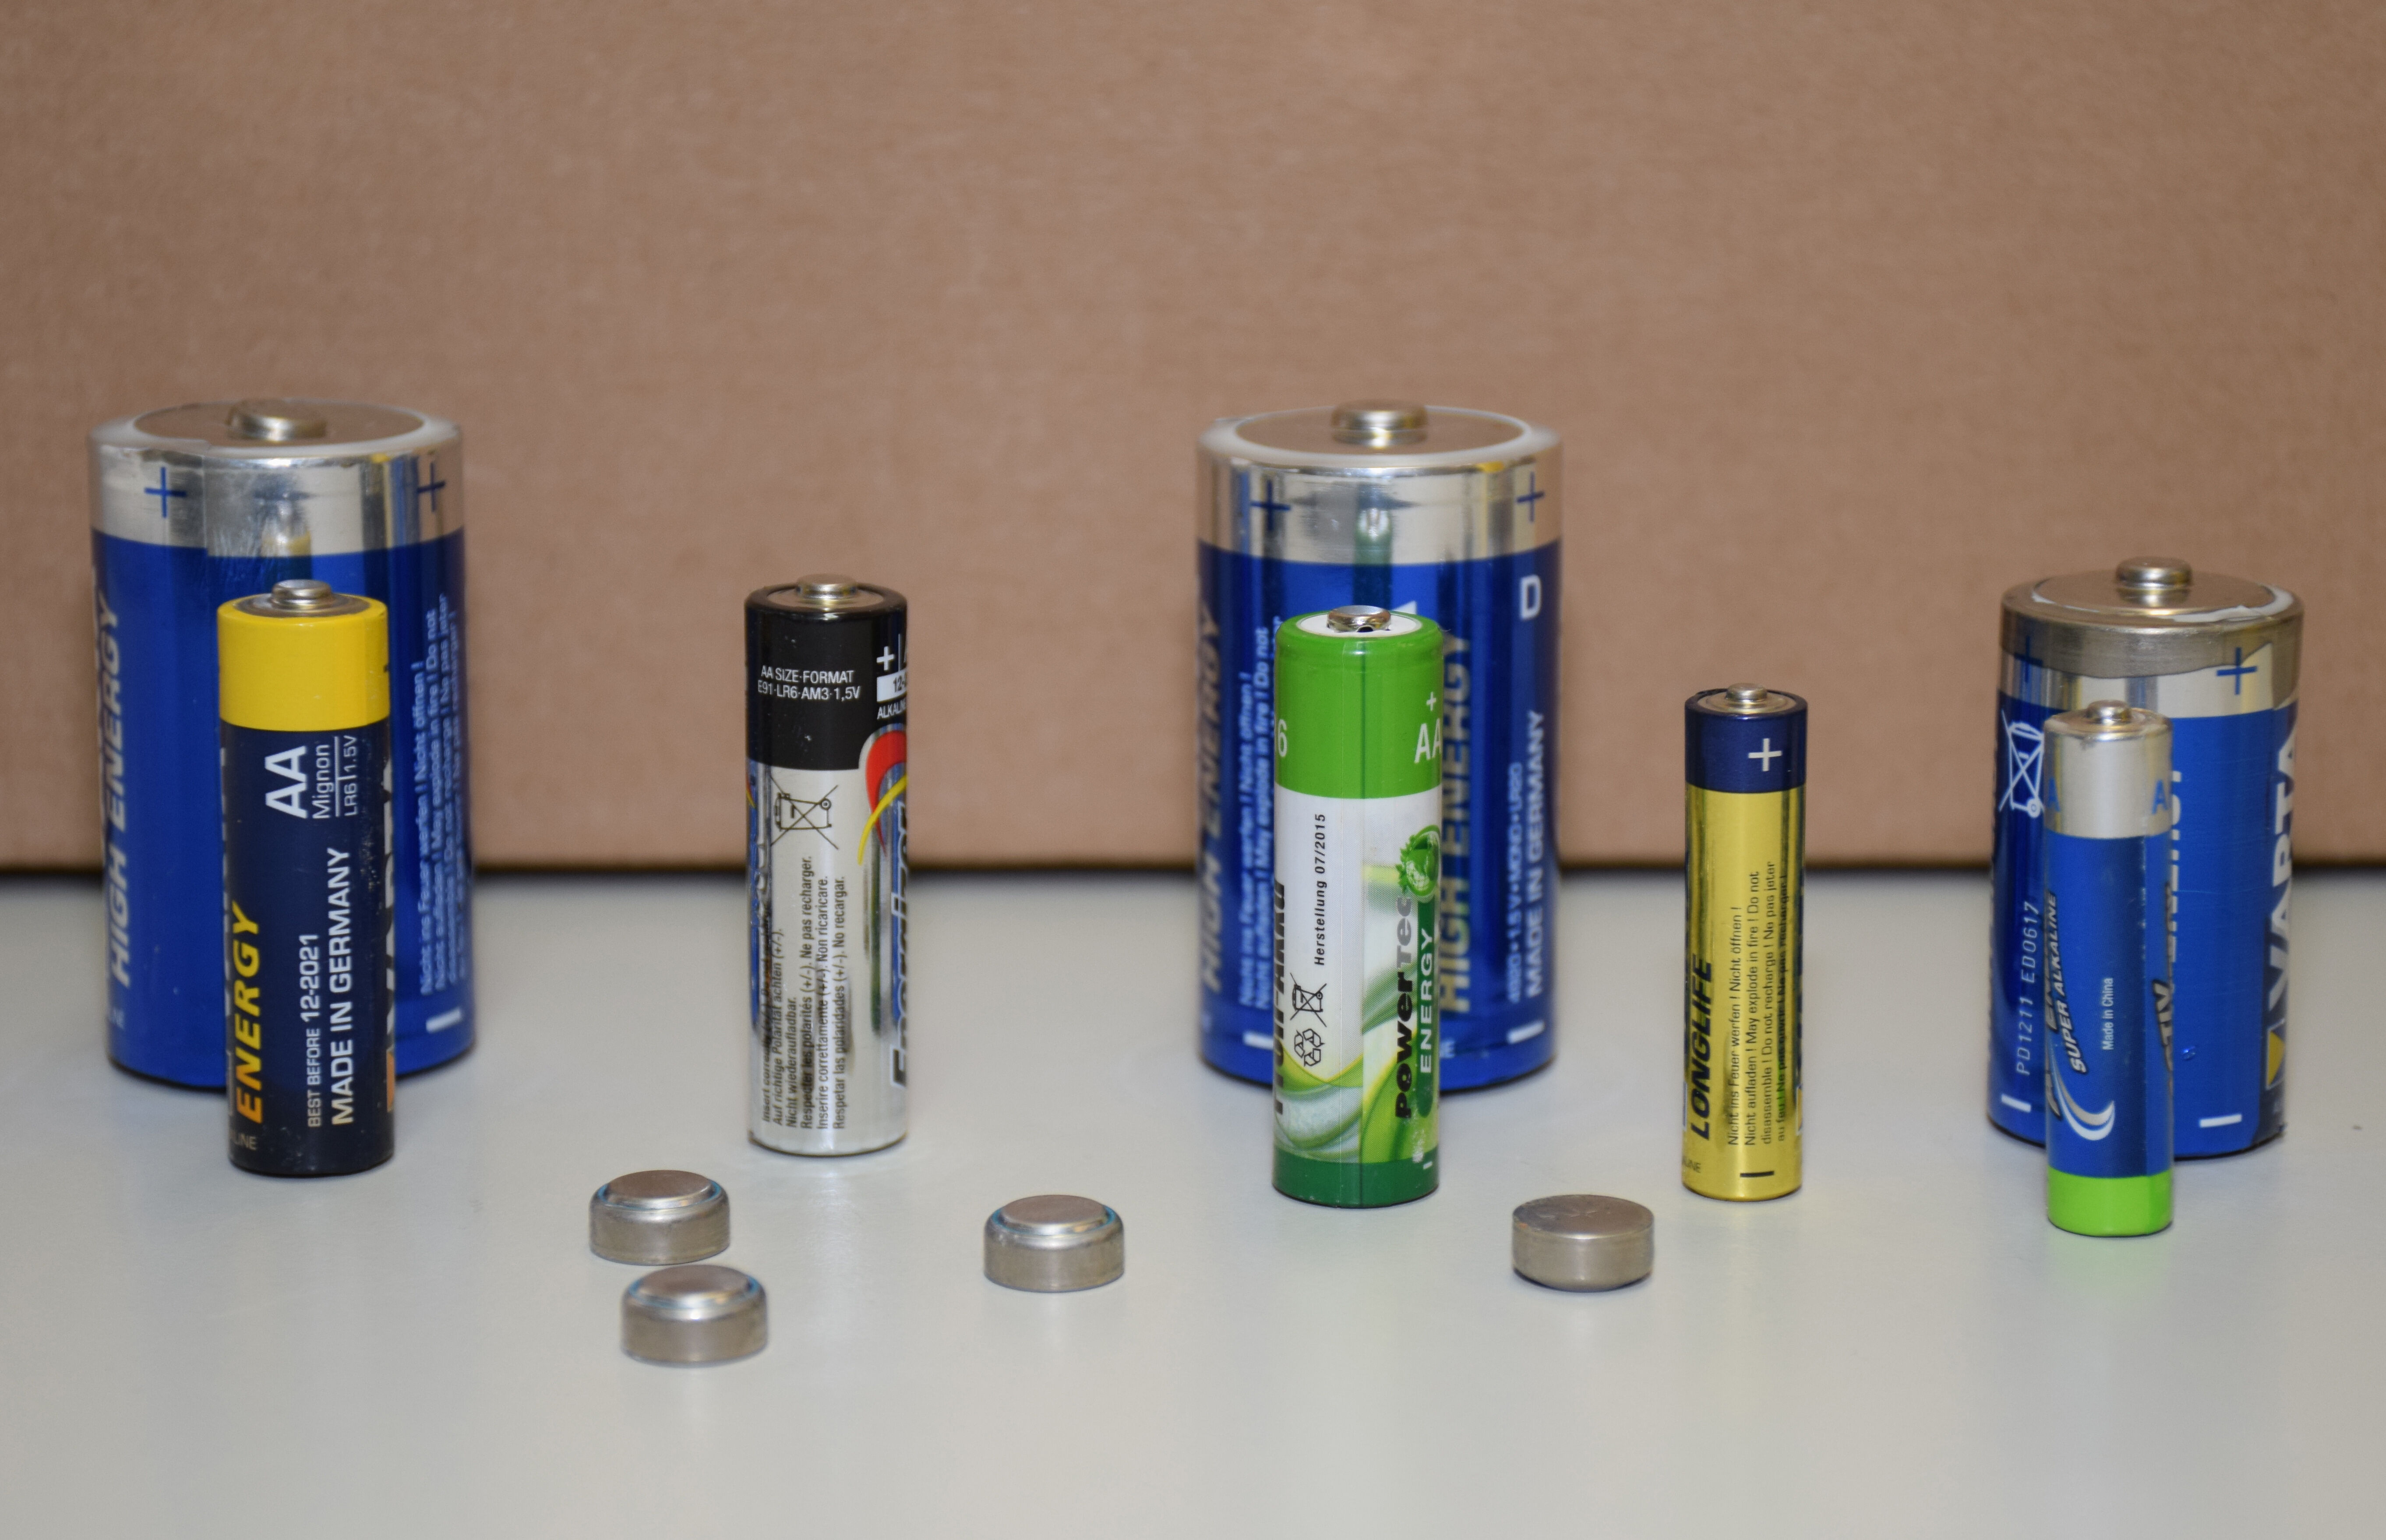 Batterien und Akkus mussen fachgerecht entsorgt werden. (c) Heidi Bauer (6)